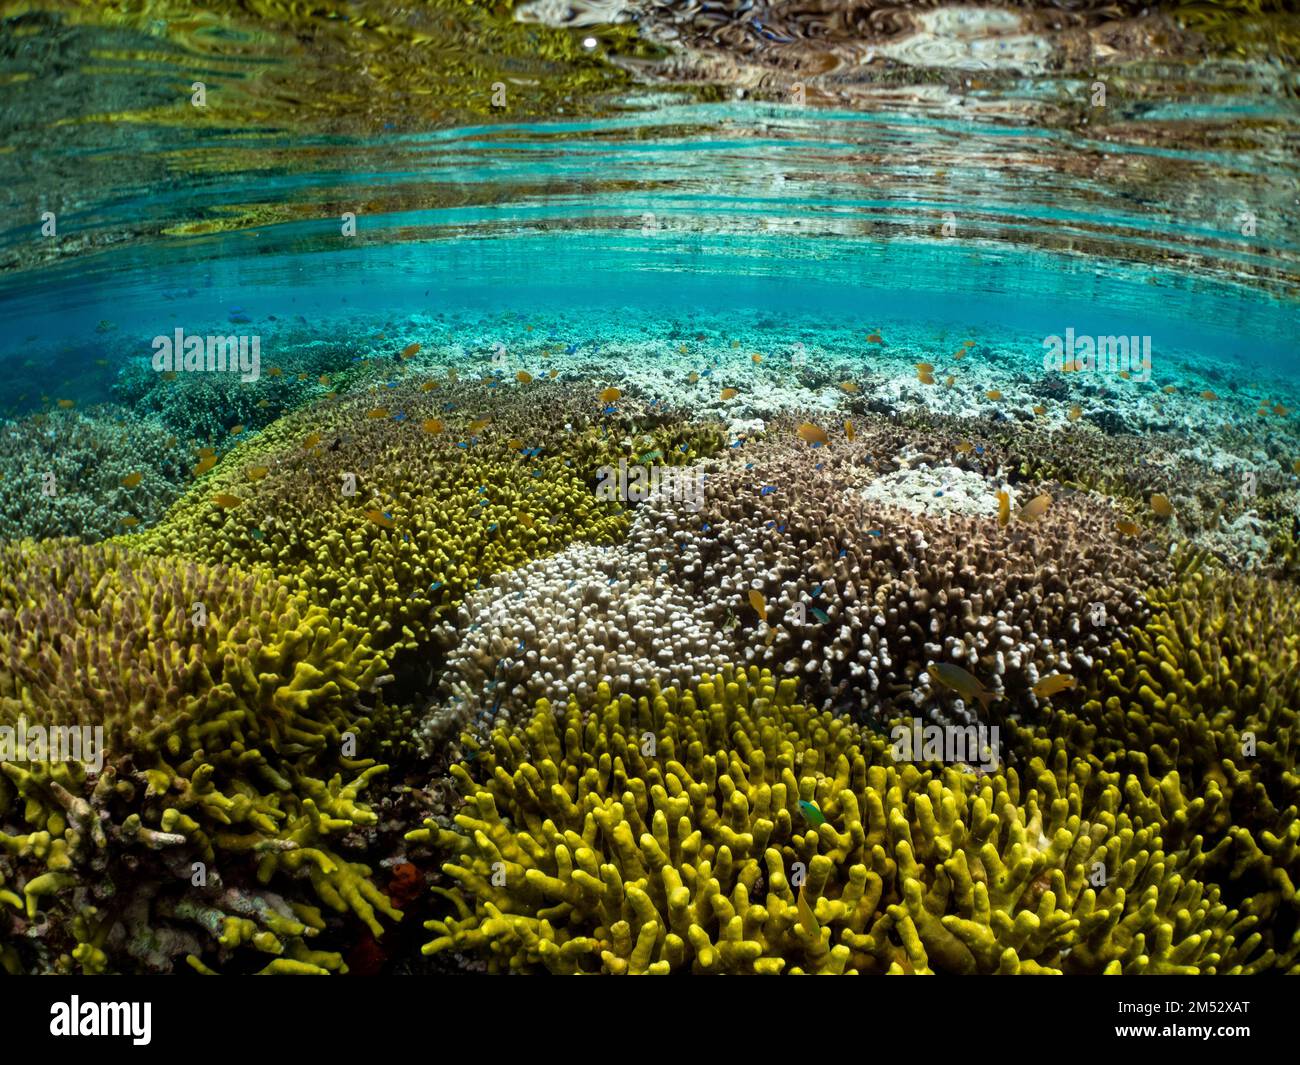 Des coraux durs et des poissons étonnants dans les échalotes de l'île de Menjangan, Bali, Indonésie Banque D'Images